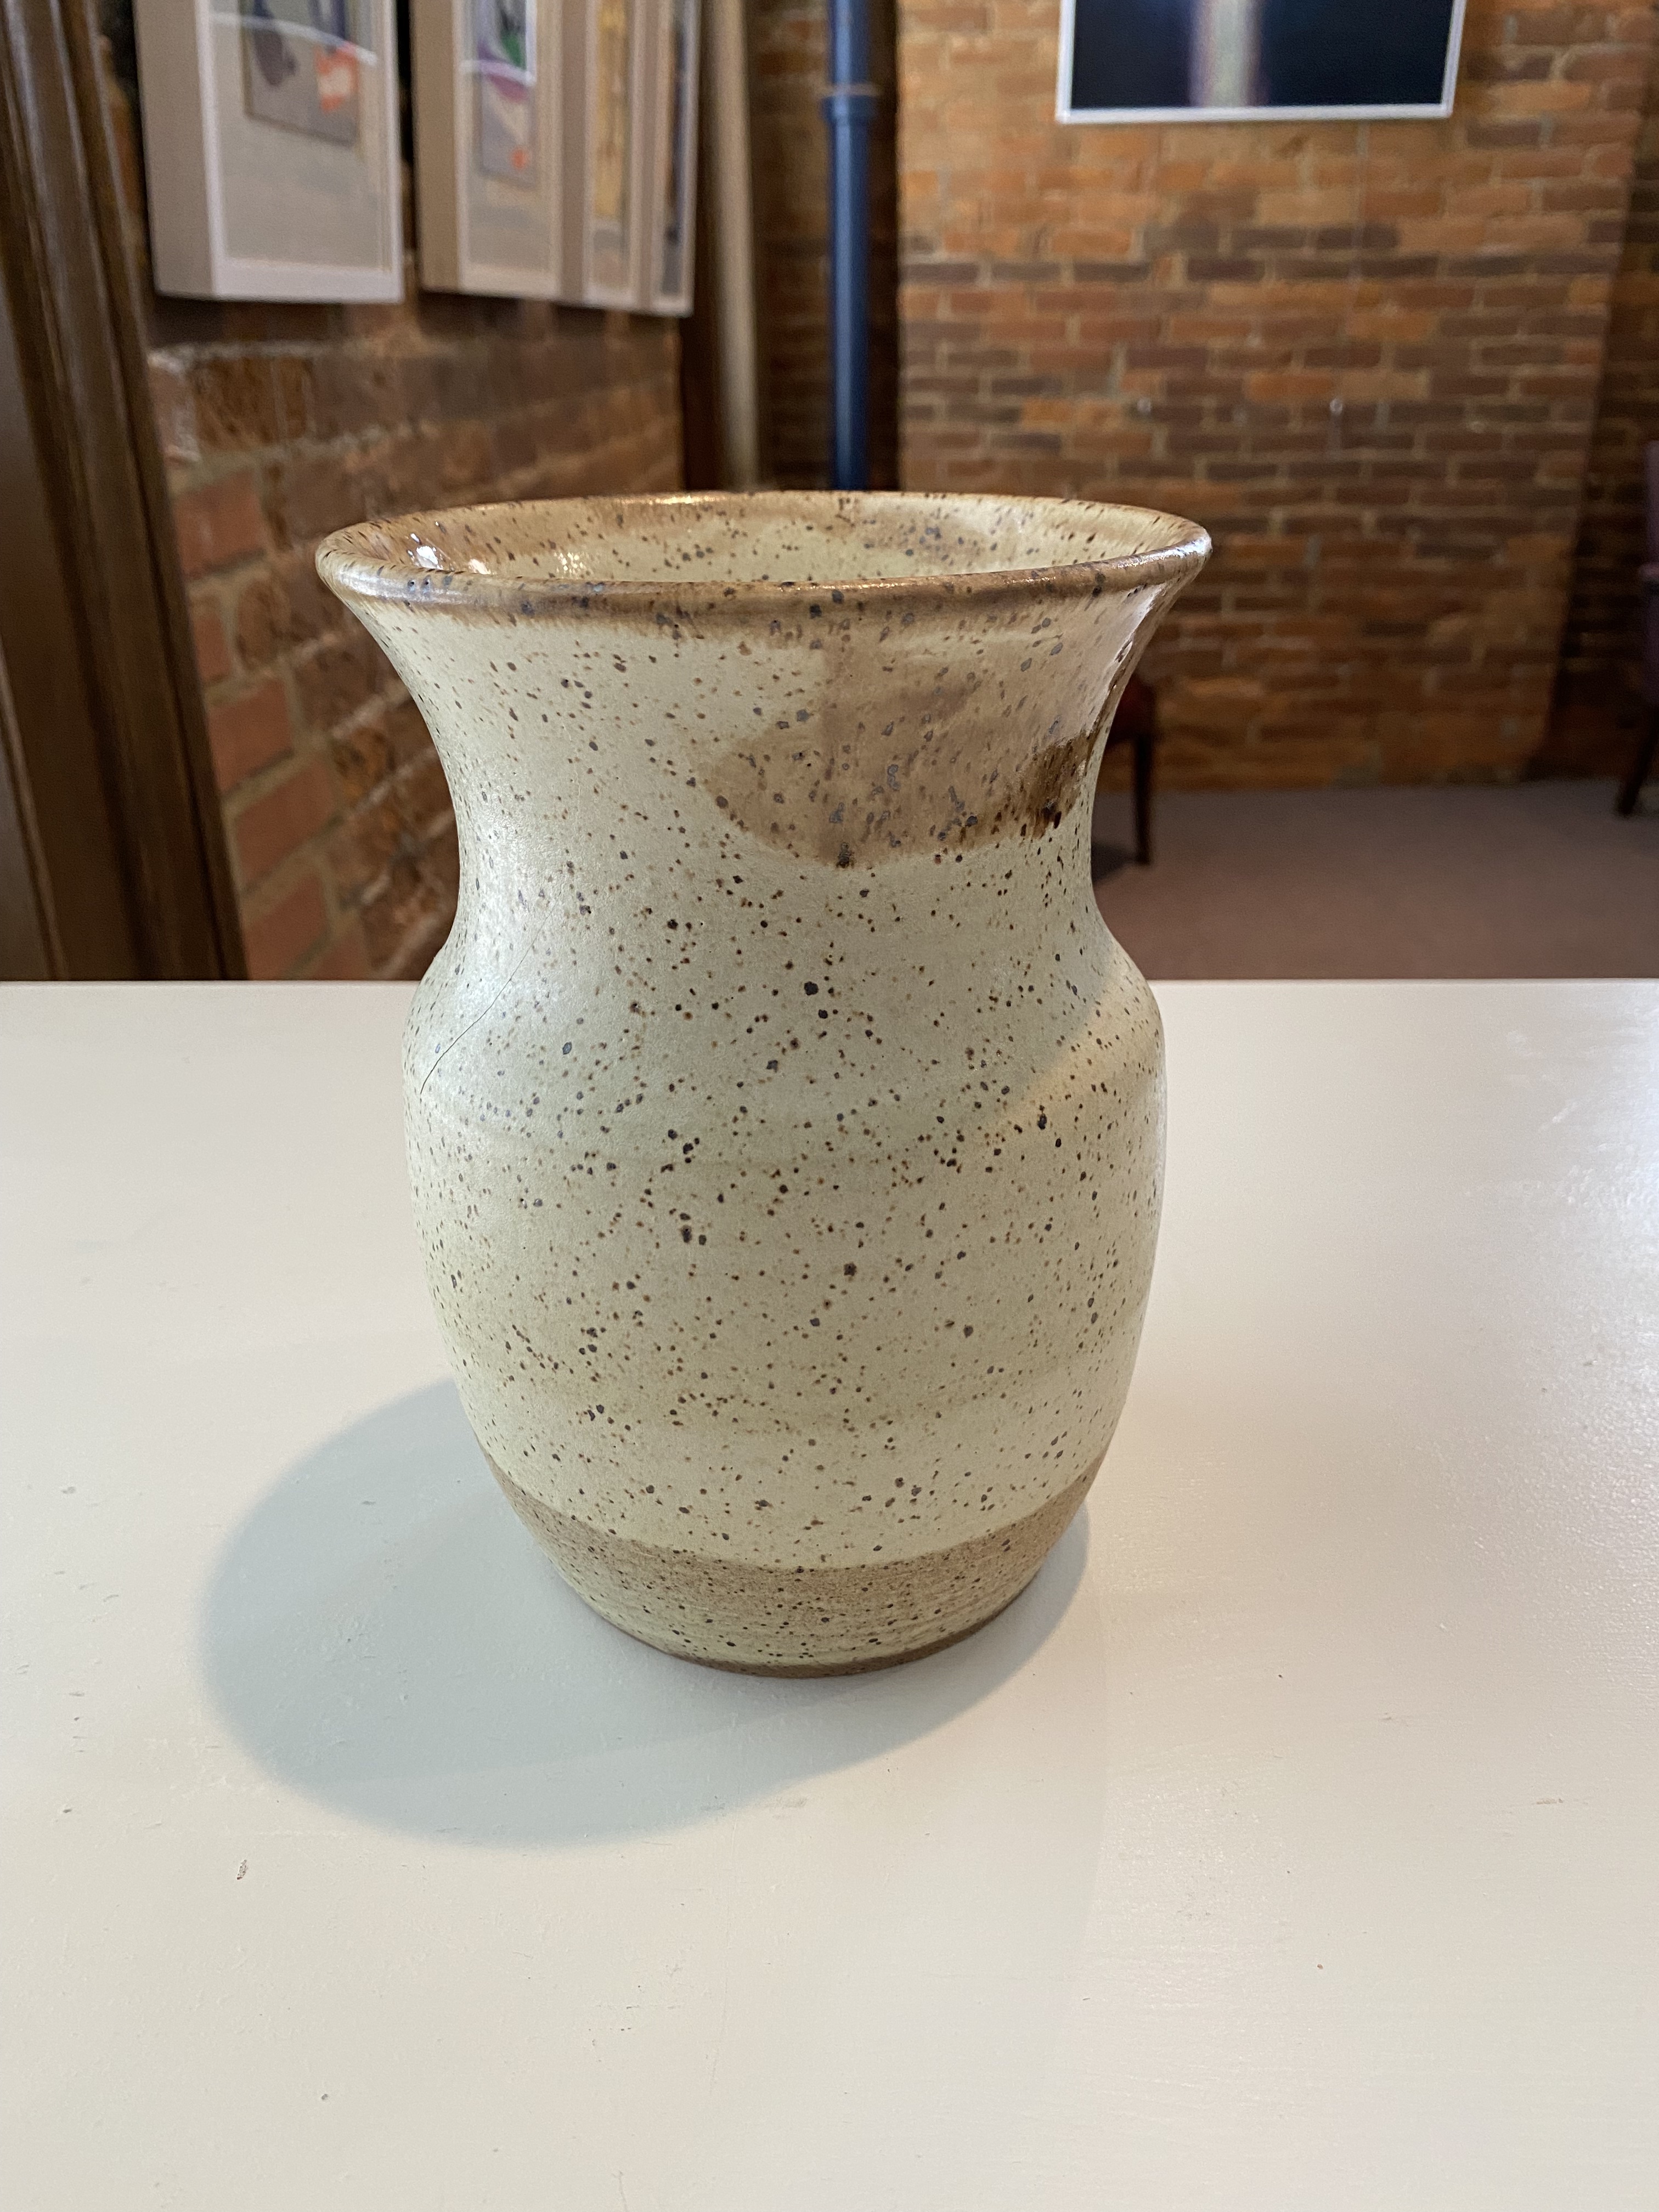 Vase
Ceramic
7.25"
$30.